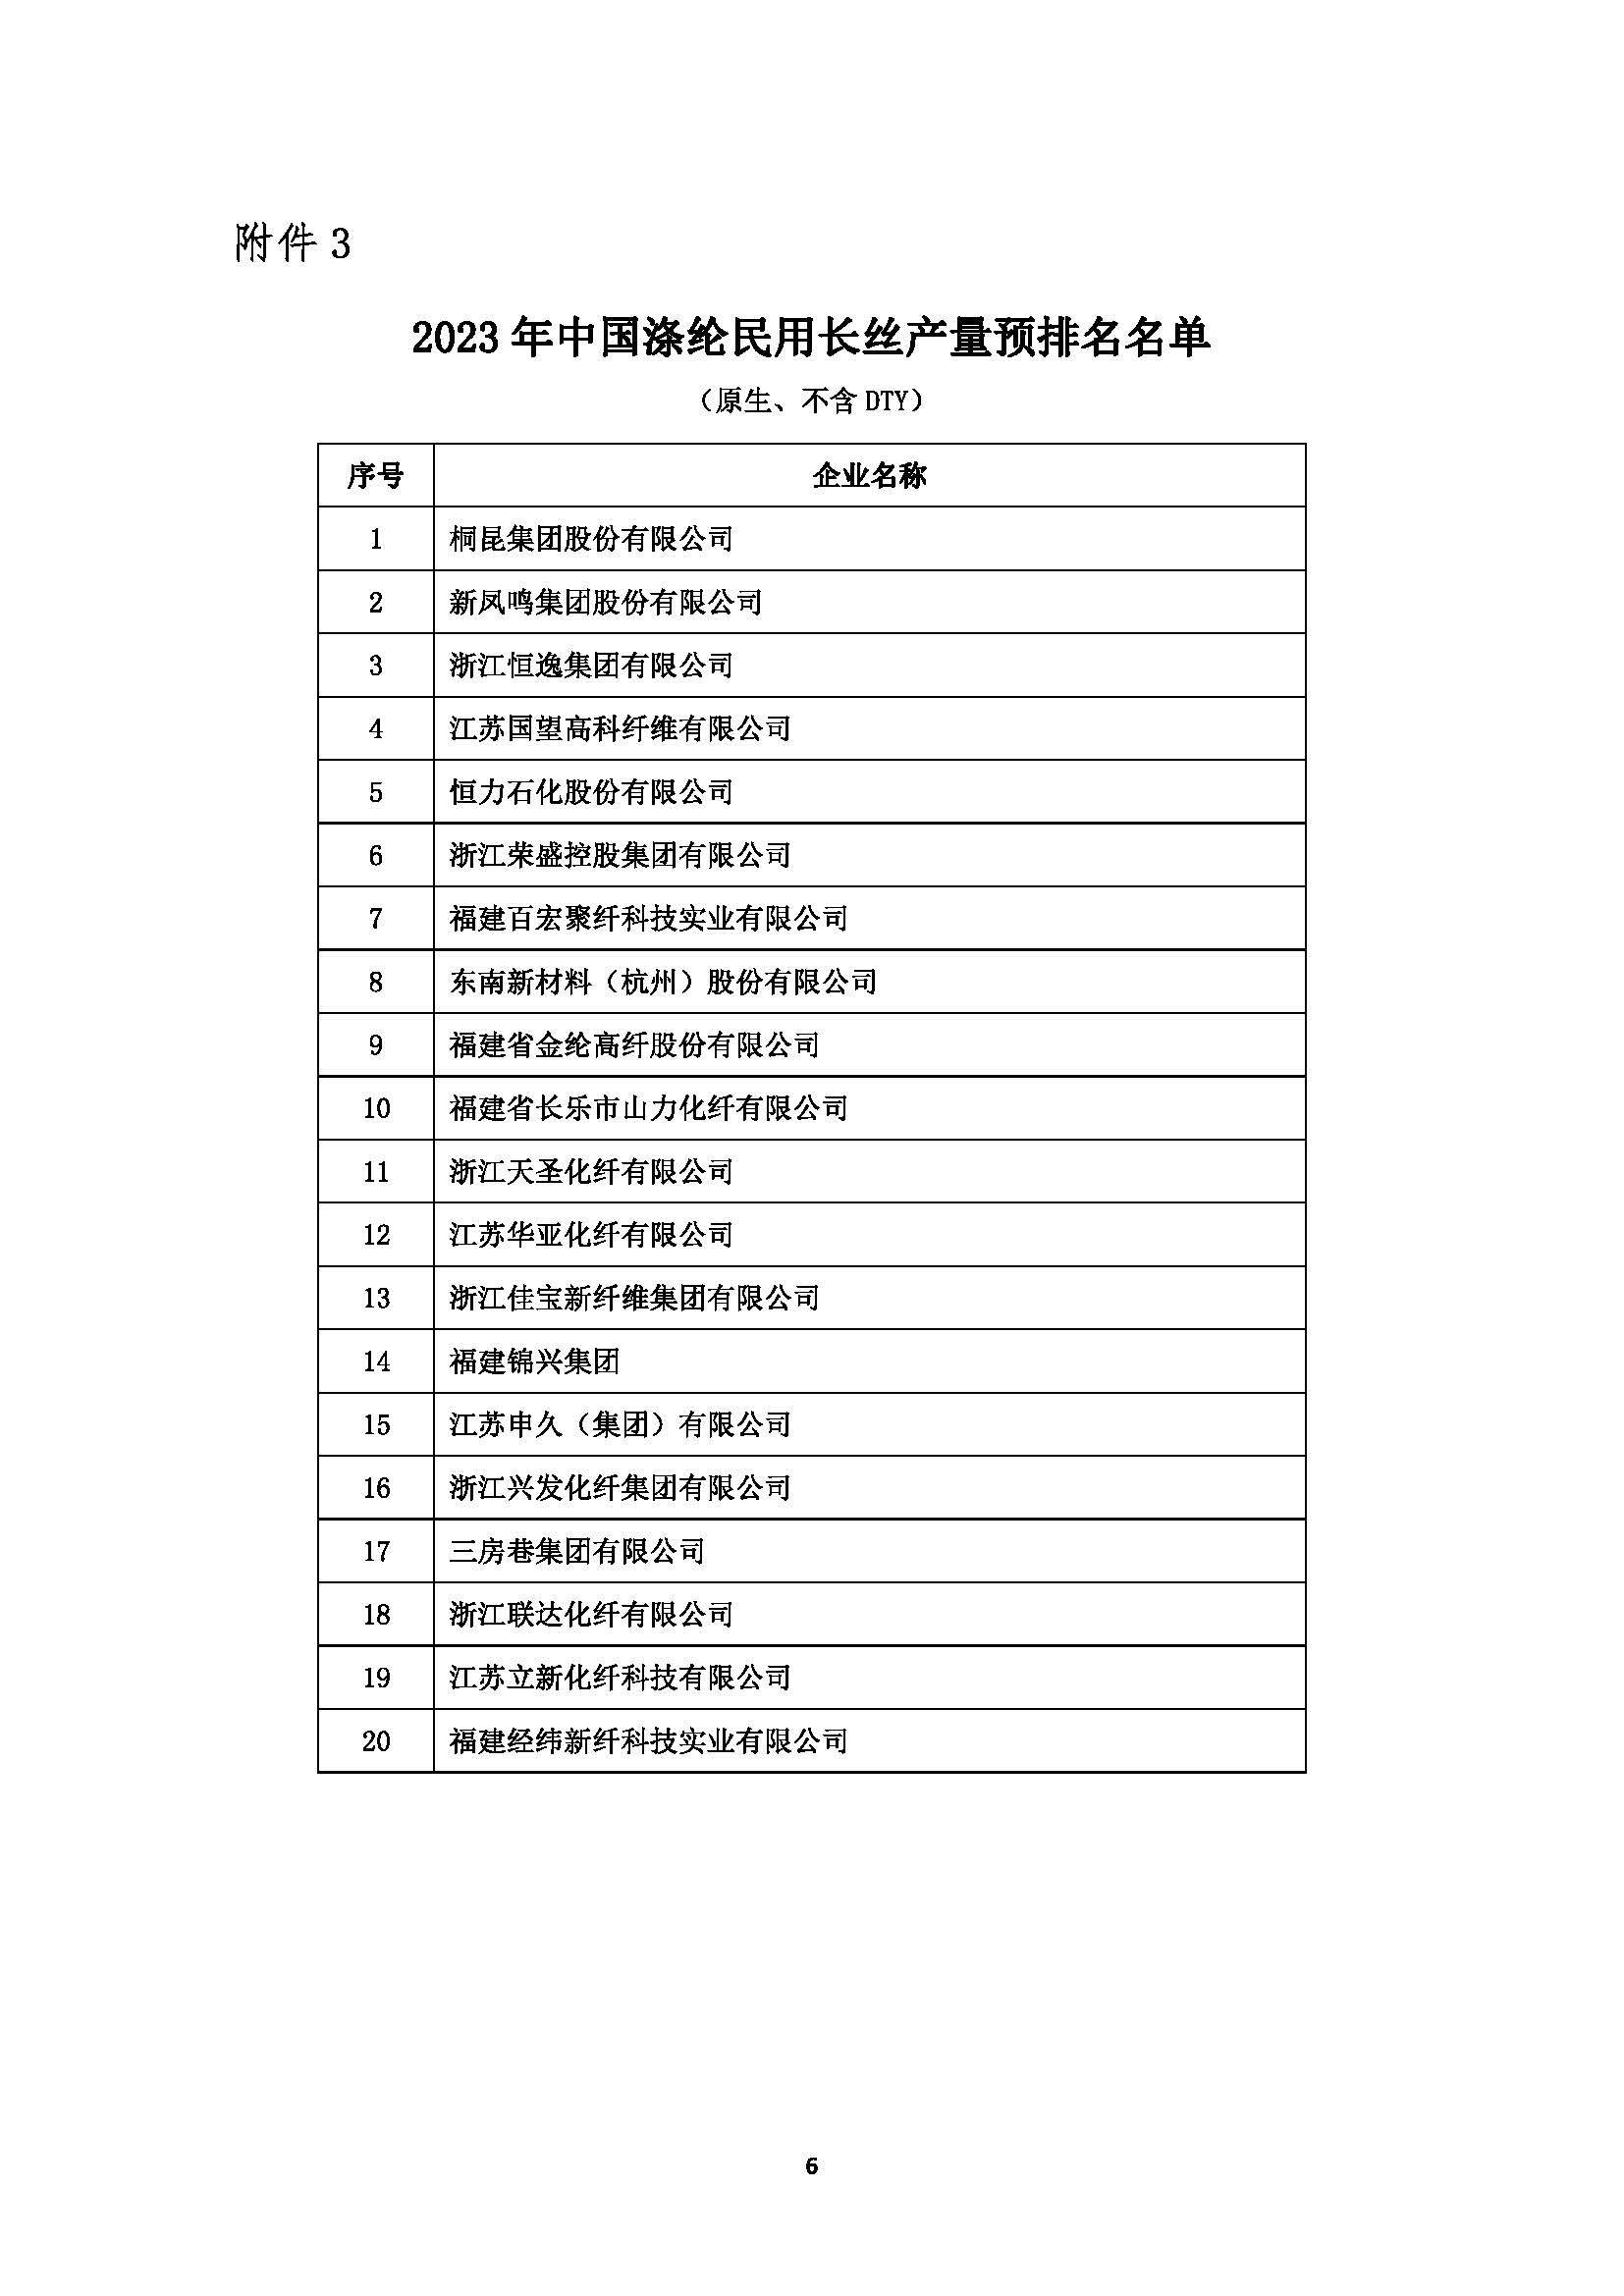 关于发布2023年中国化纤行业产量预排名名单及启动正式排名工作的通知20240227(1)_页面_06.jpg